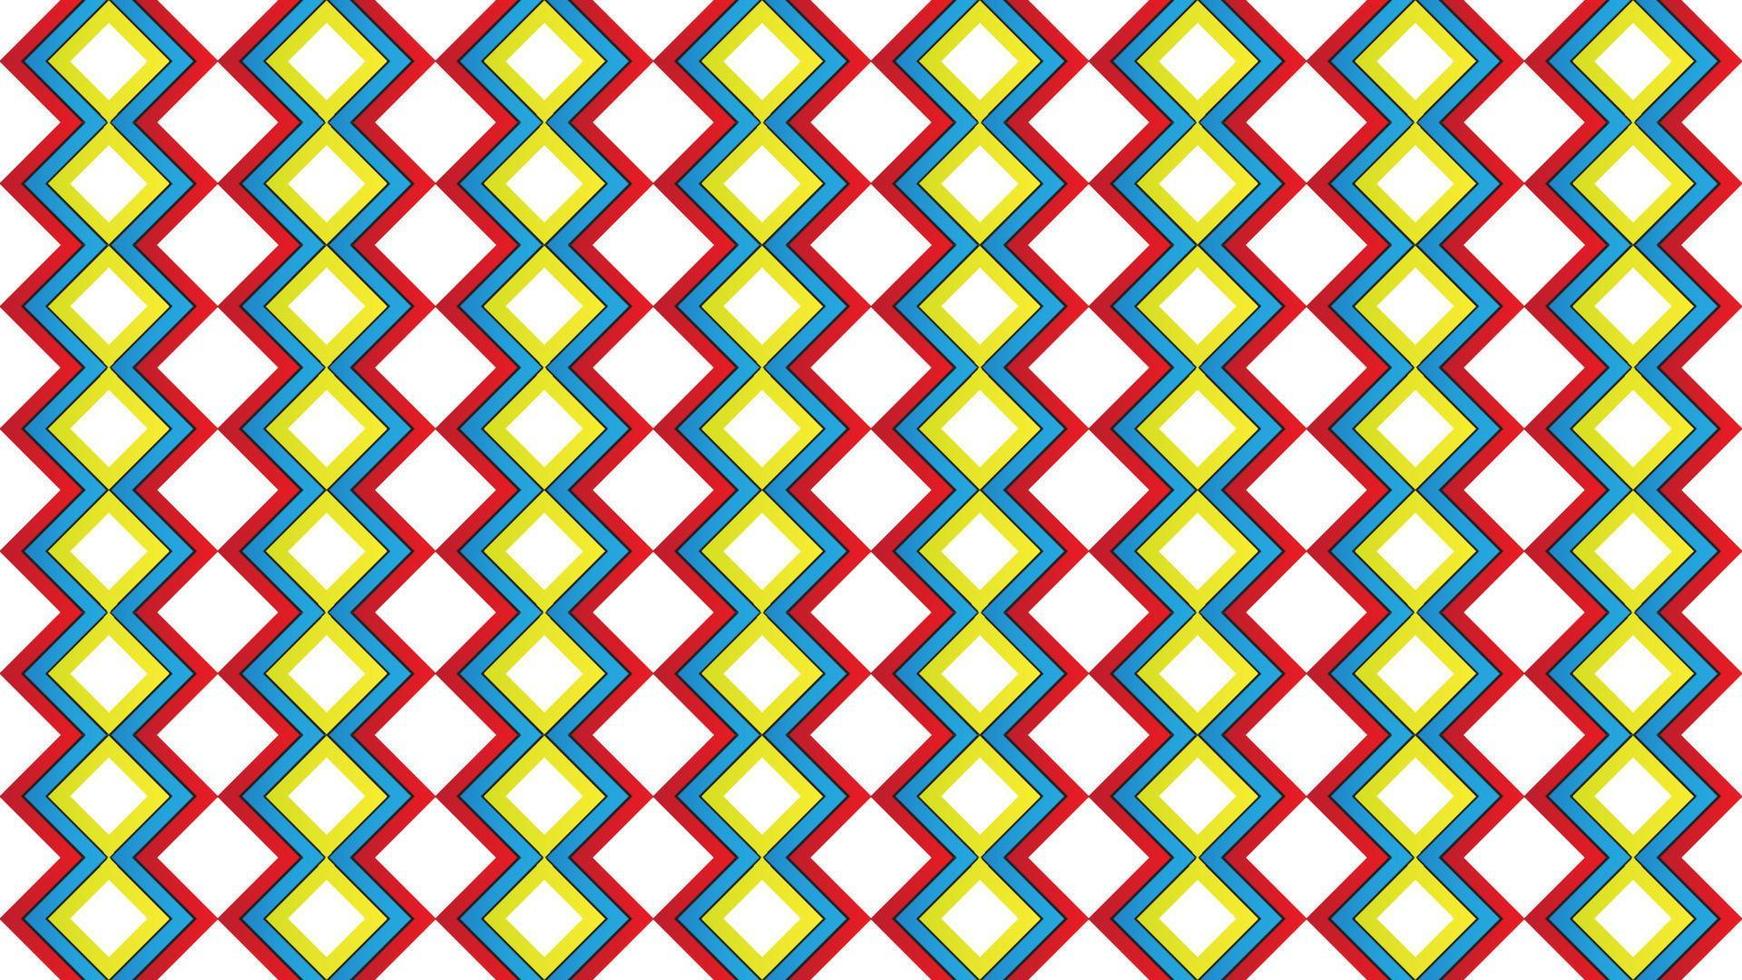 bunte geschichtete quadratische formvektorillustration. abstrakte nahtlose Muster-Design-Vorlage. weißes gelbes rotes blaues Farbthema. einfach und sauber. vektor